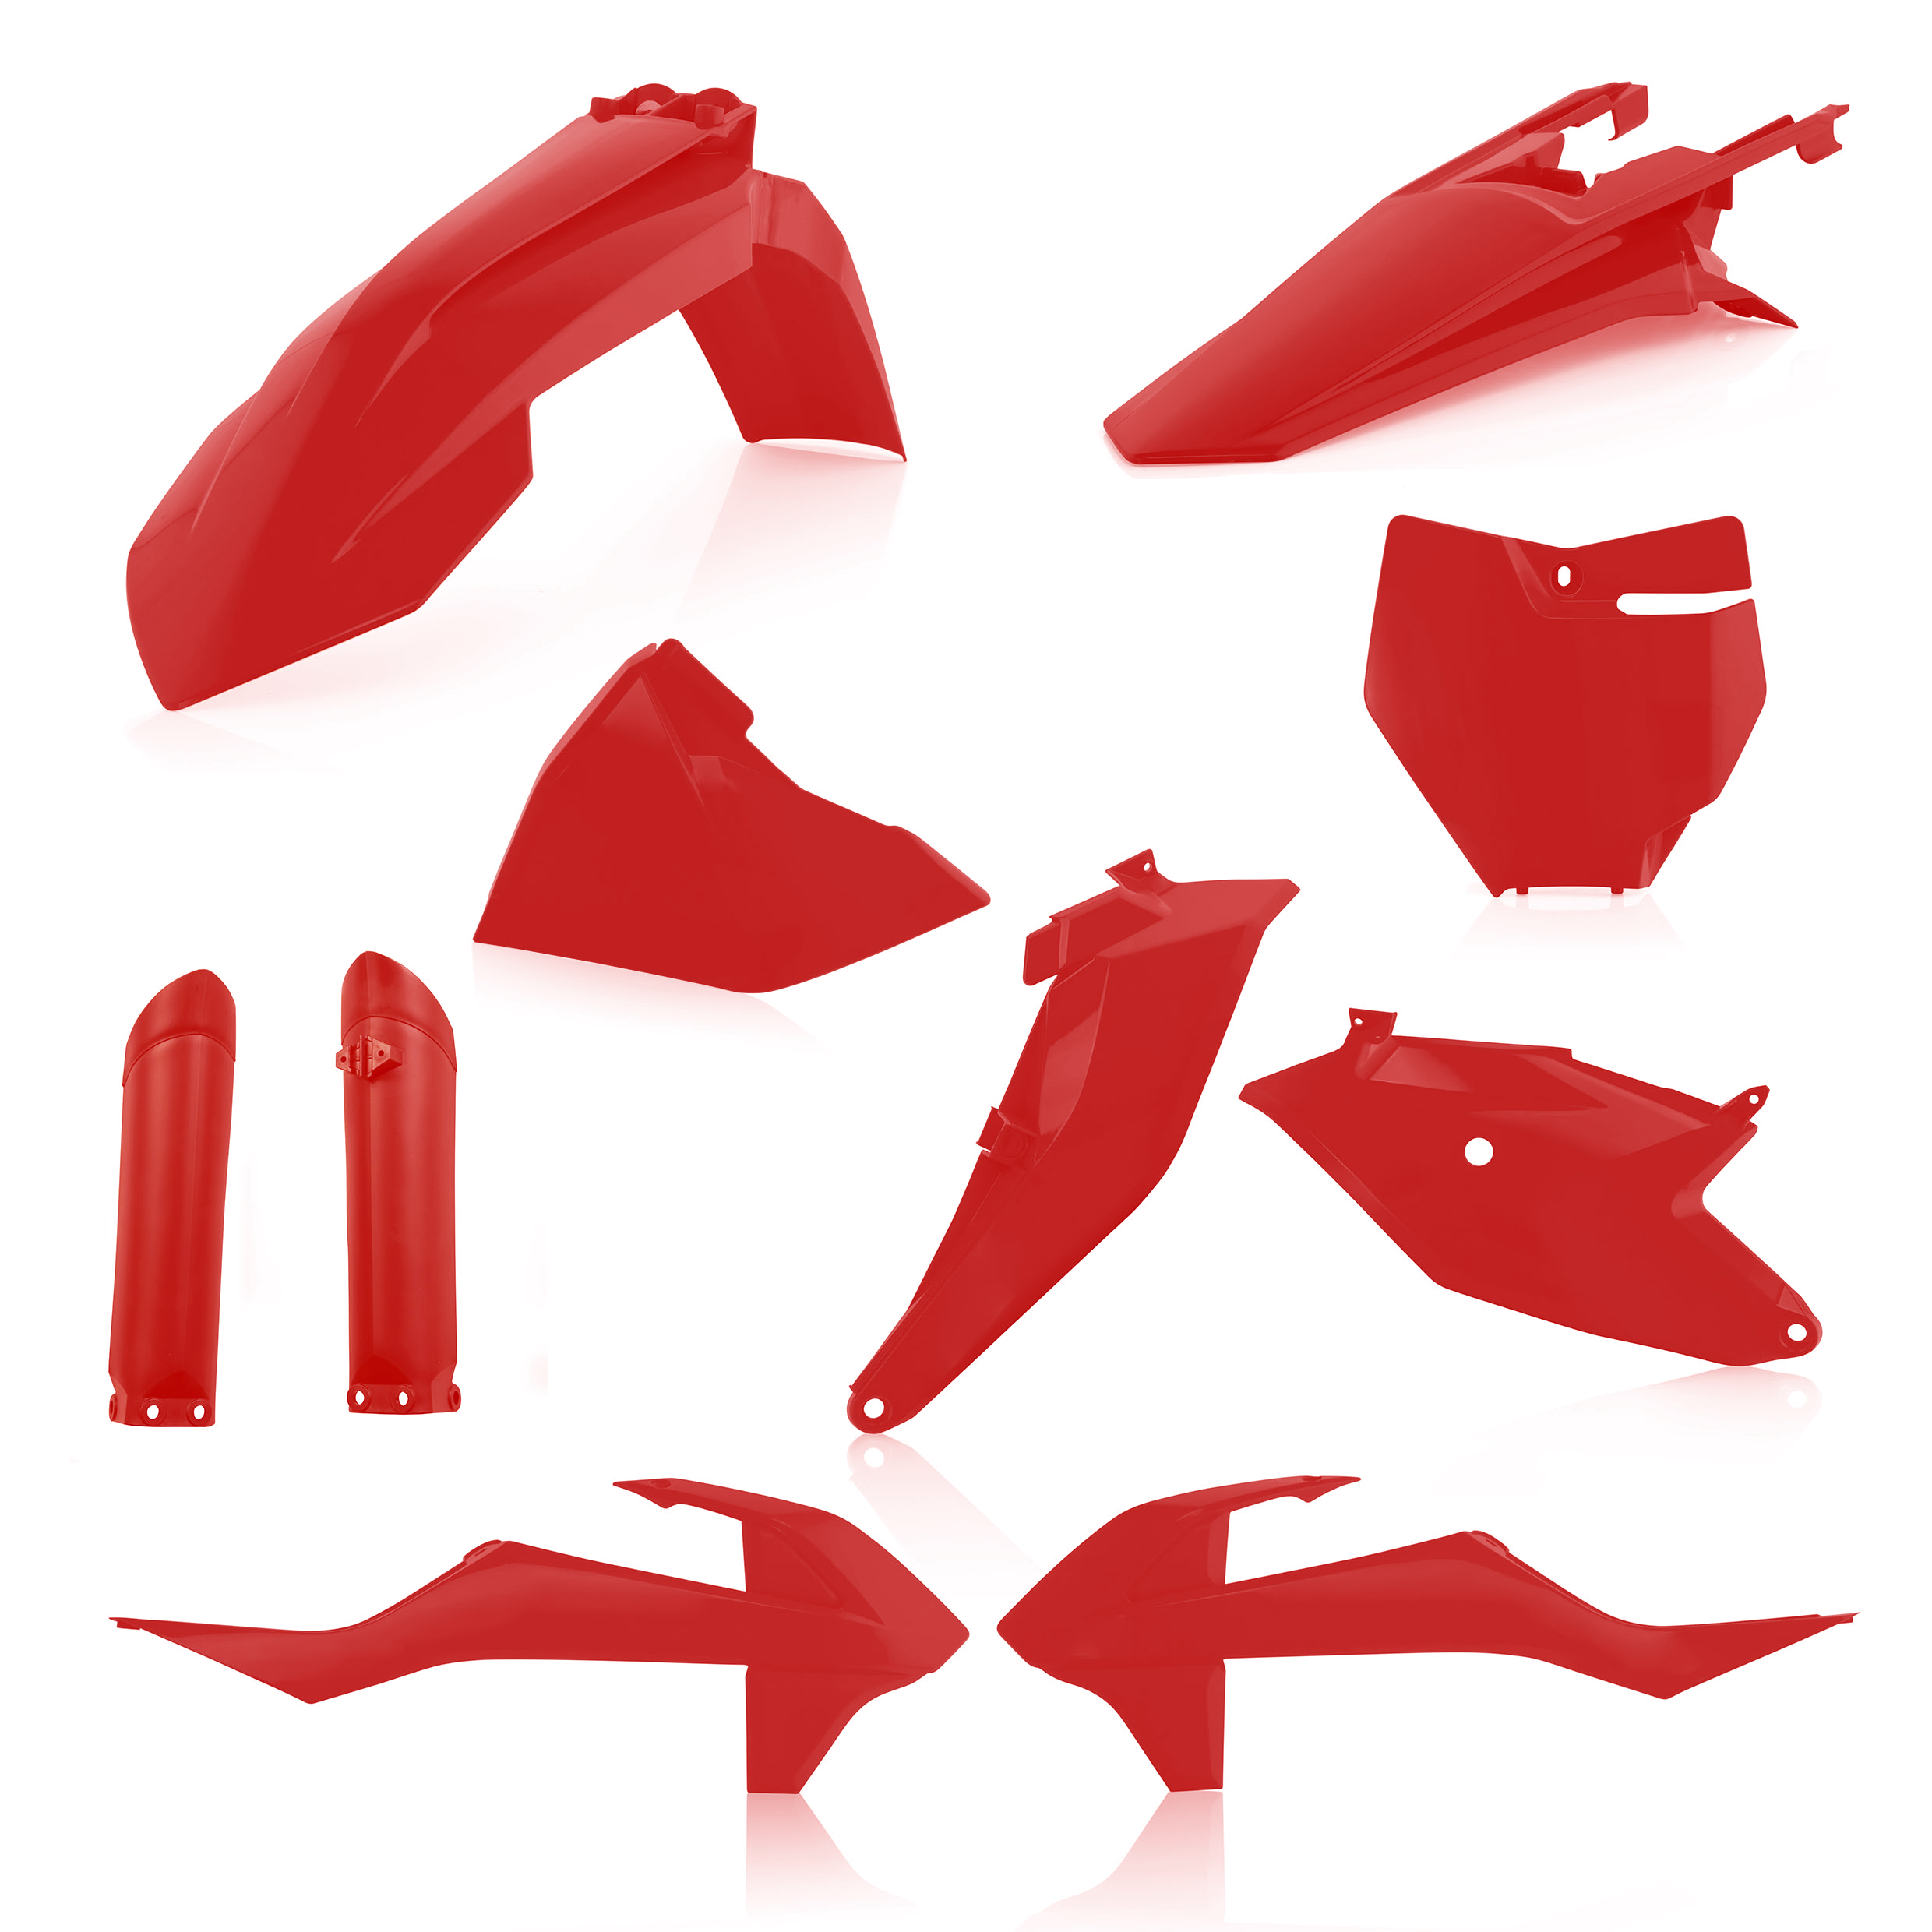 Plastikteile für deine KTM SX 85 in rot bestehend aus Kotflügel vorn Kotflügel hinten Kühlerspoiler Seitenteile Gabelschützer Startnummerntafel Air Box Cover